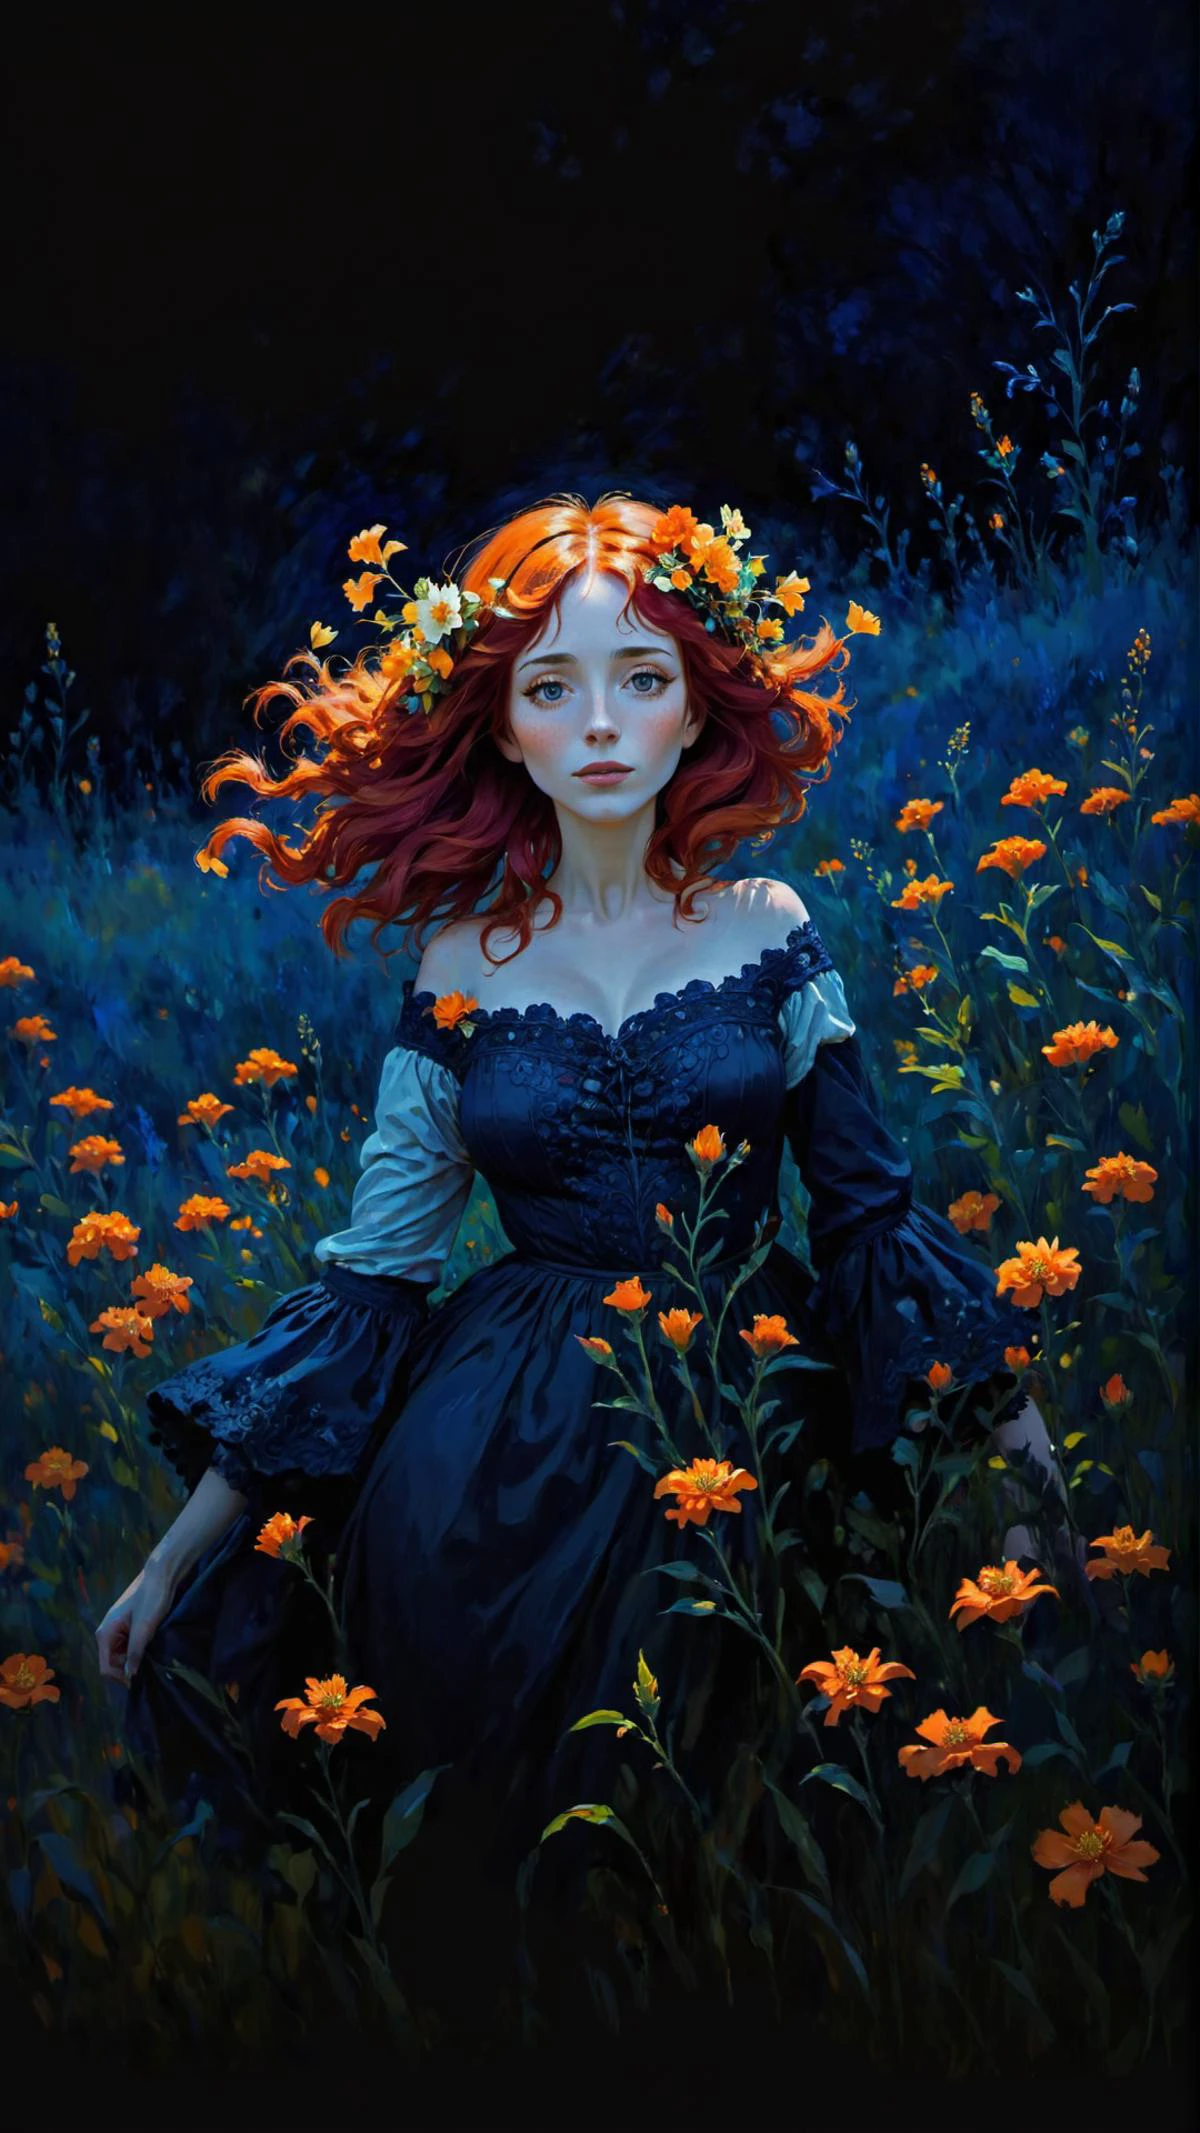 Картина импрессионизма в стиле Клода Моне, женщина с рыжими волосами и оранжевыми цветами в волосах, в поле оранжевых цветов, Темно-синий фон, яркие цвета, Фэнтези-арт,